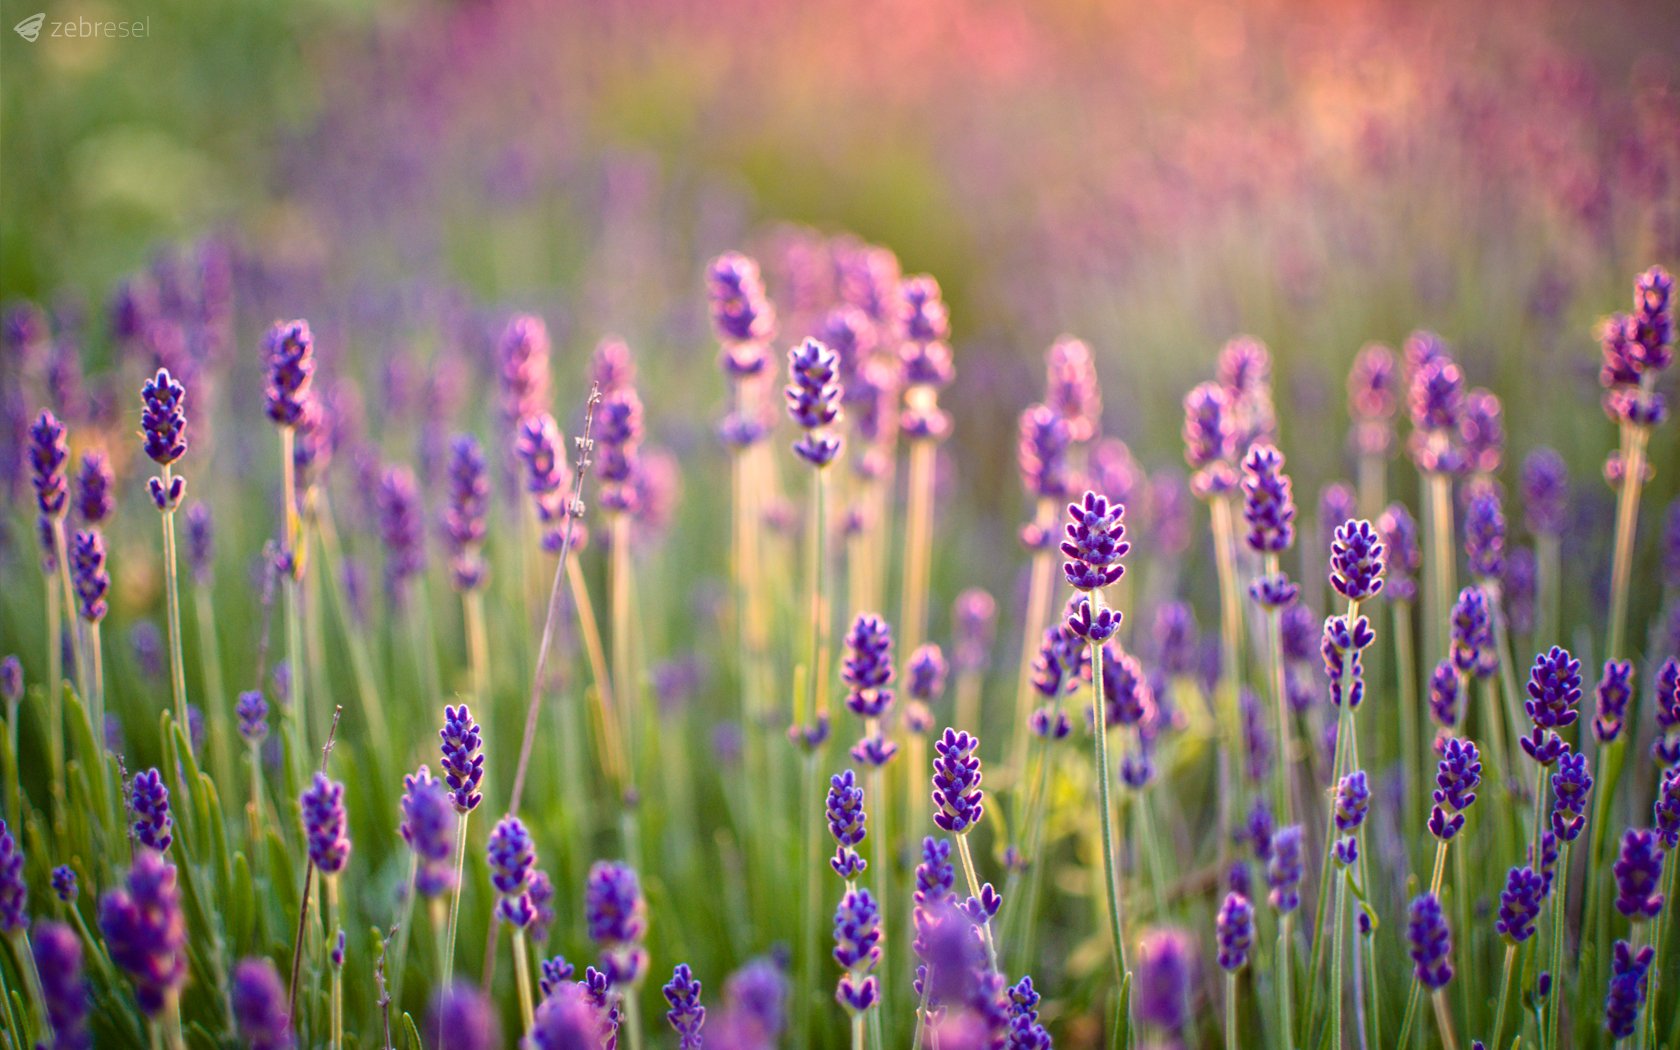 Nắm bắt được vẻ đẹp tuyệt vời của hoa Lavender qua hình ảnh đầy sức sống và màu sắc tươi tắn. Hãy dành thời gian để thưởng thức những hình ảnh này và cảm nhận sự thanh thản trong tâm hồn.